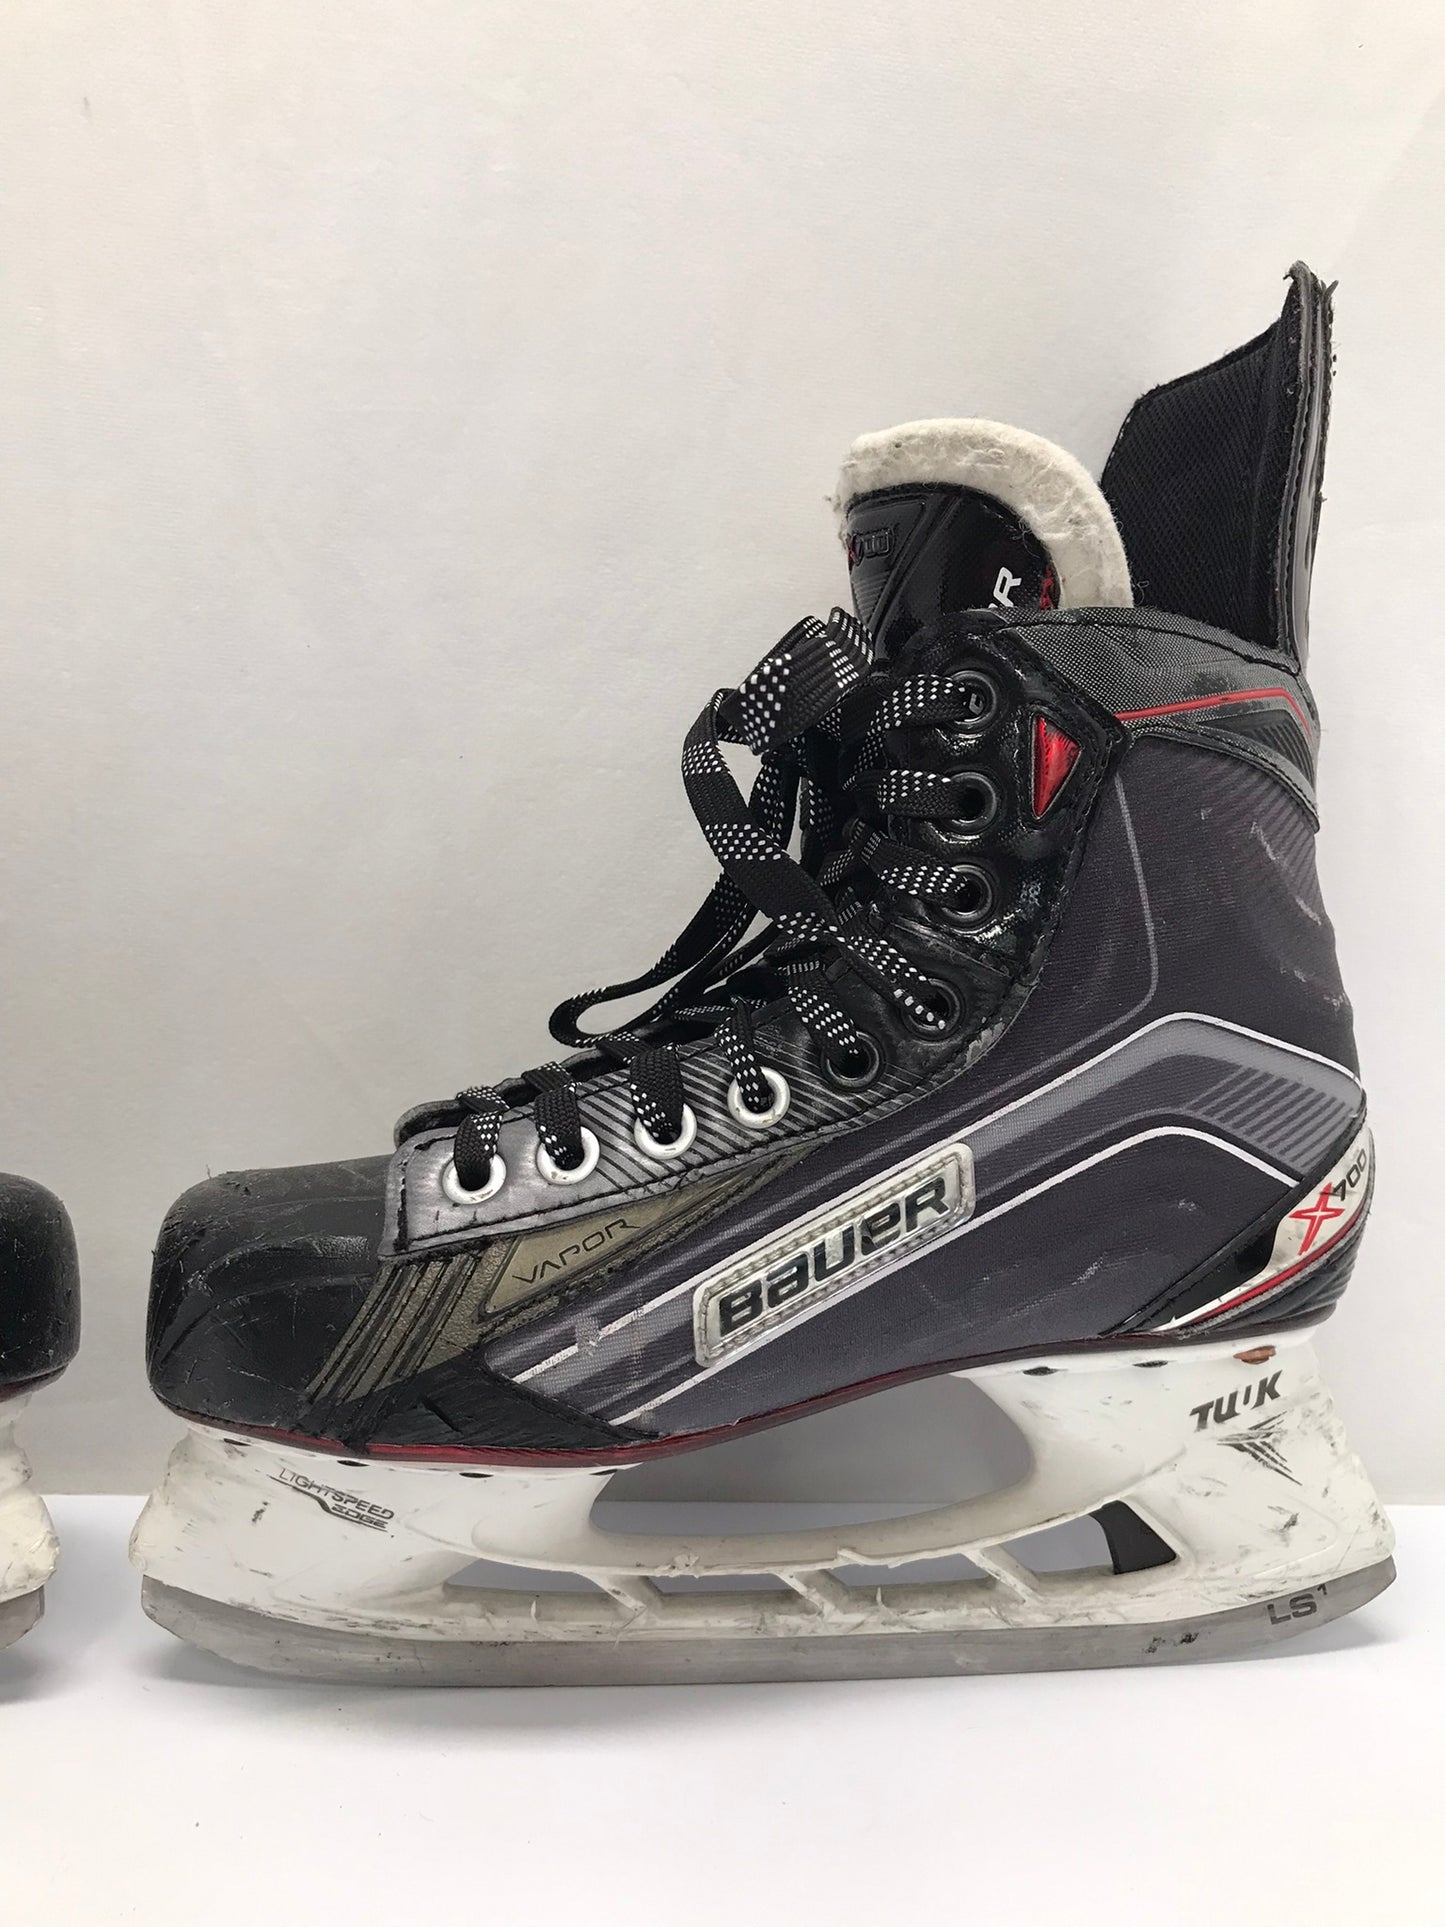 Hockey Skates Child Size 6 Junior Bauer Vapor X700 Minor Wear Marks